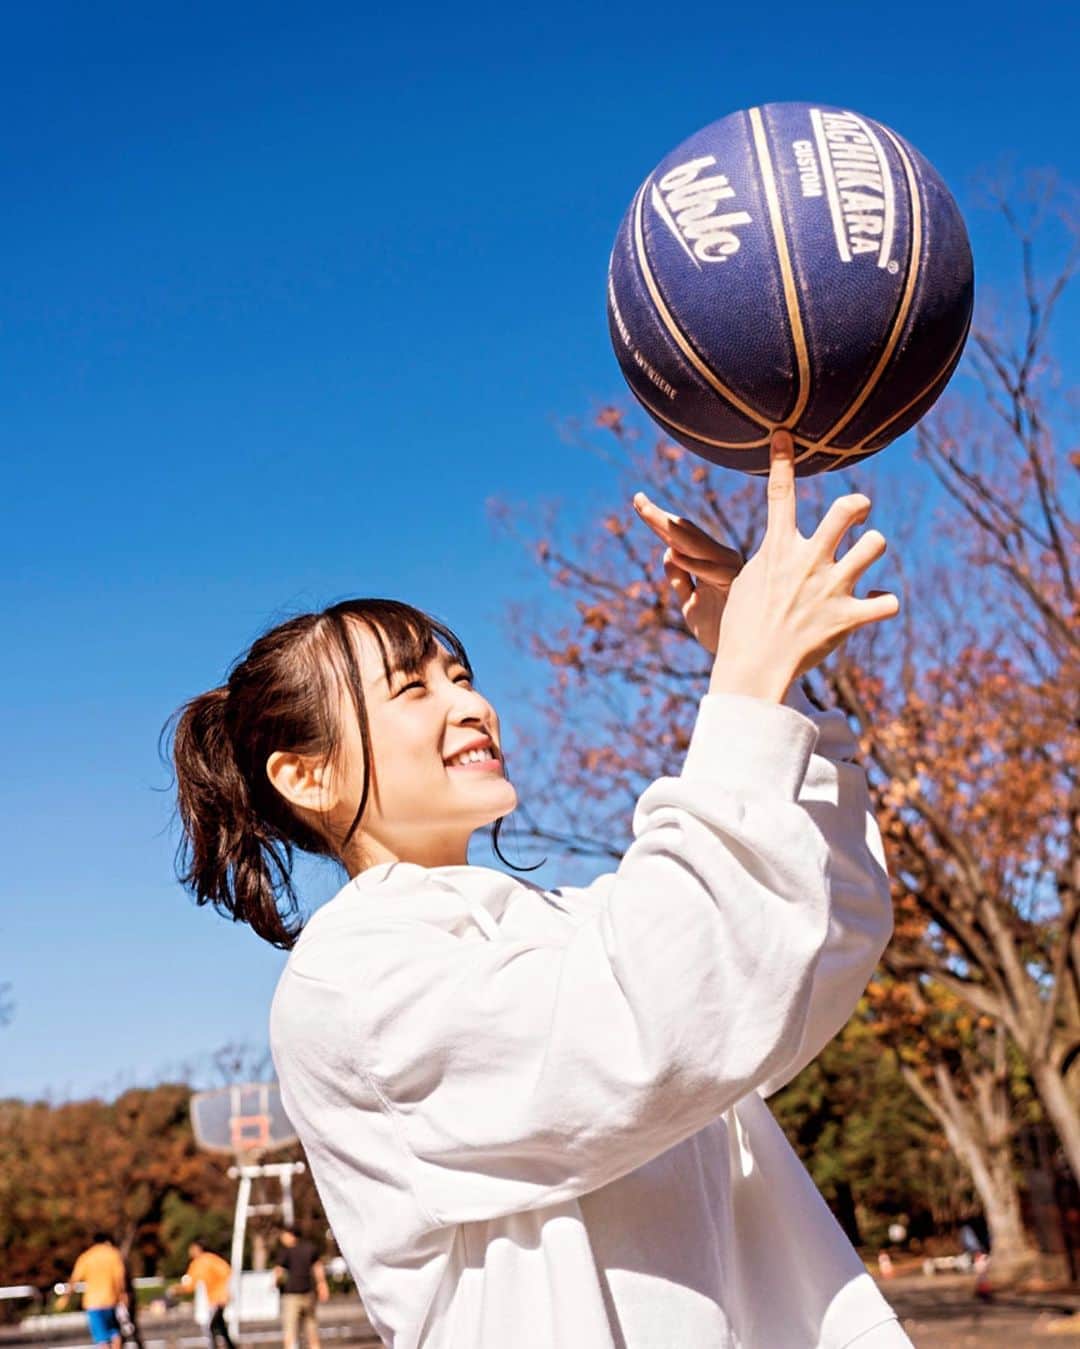 中崎絵梨奈さんのインスタグラム写真 中崎絵梨奈instagram 元バスケ部ですが ボール回せません 最高4秒 Bリーグ Bリーグ観戦 Bleague バスケ バスケットボール スポーツ観戦女子 バスケ好きな人と繋がりたい スポーツ観戦 バスケ女子 Japan